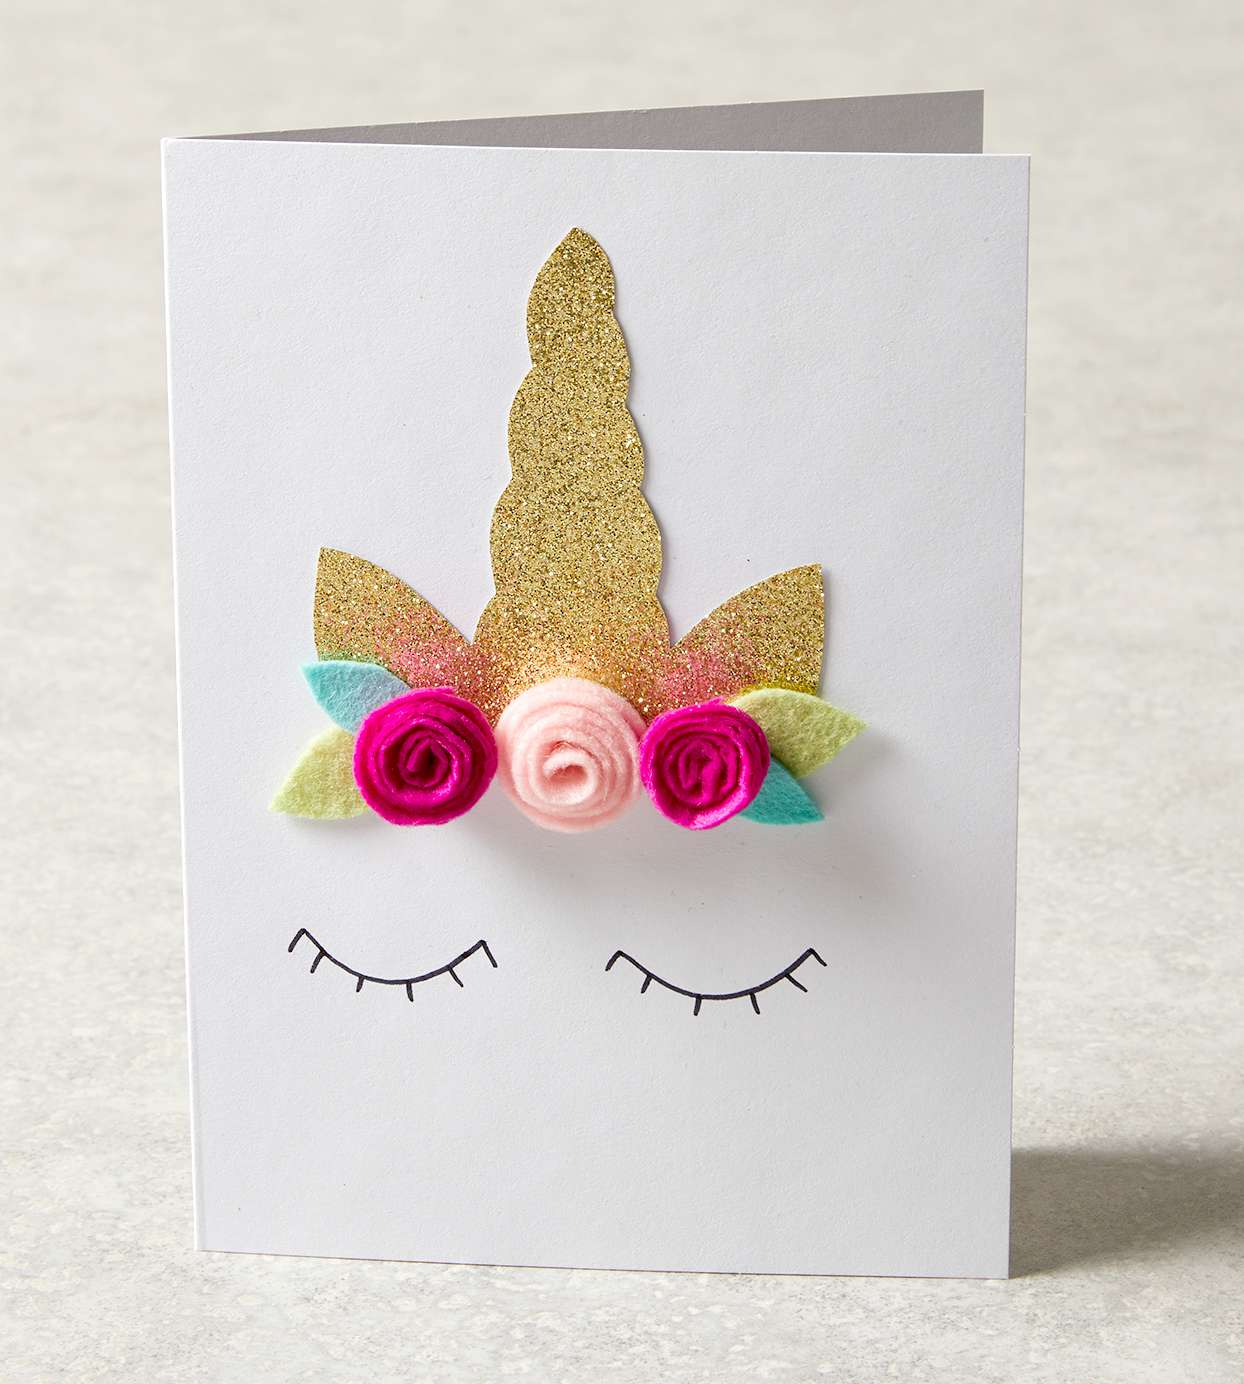 Homemade unicorn card with felt flowers